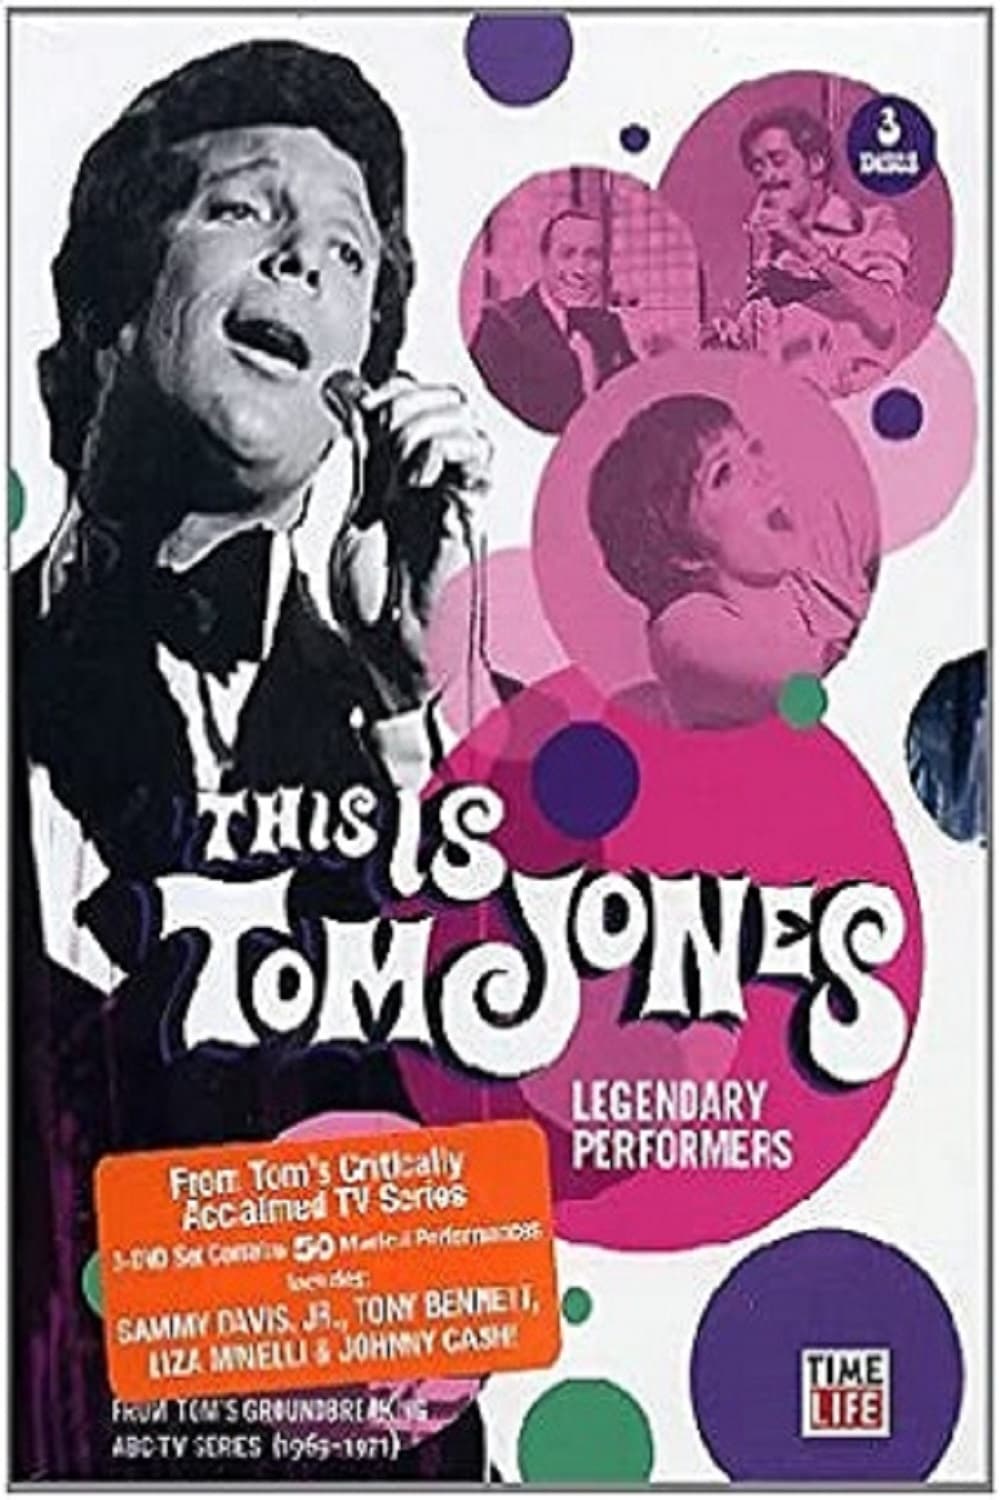 Tom Jones - This Is Tom Jones - Legendary Performers